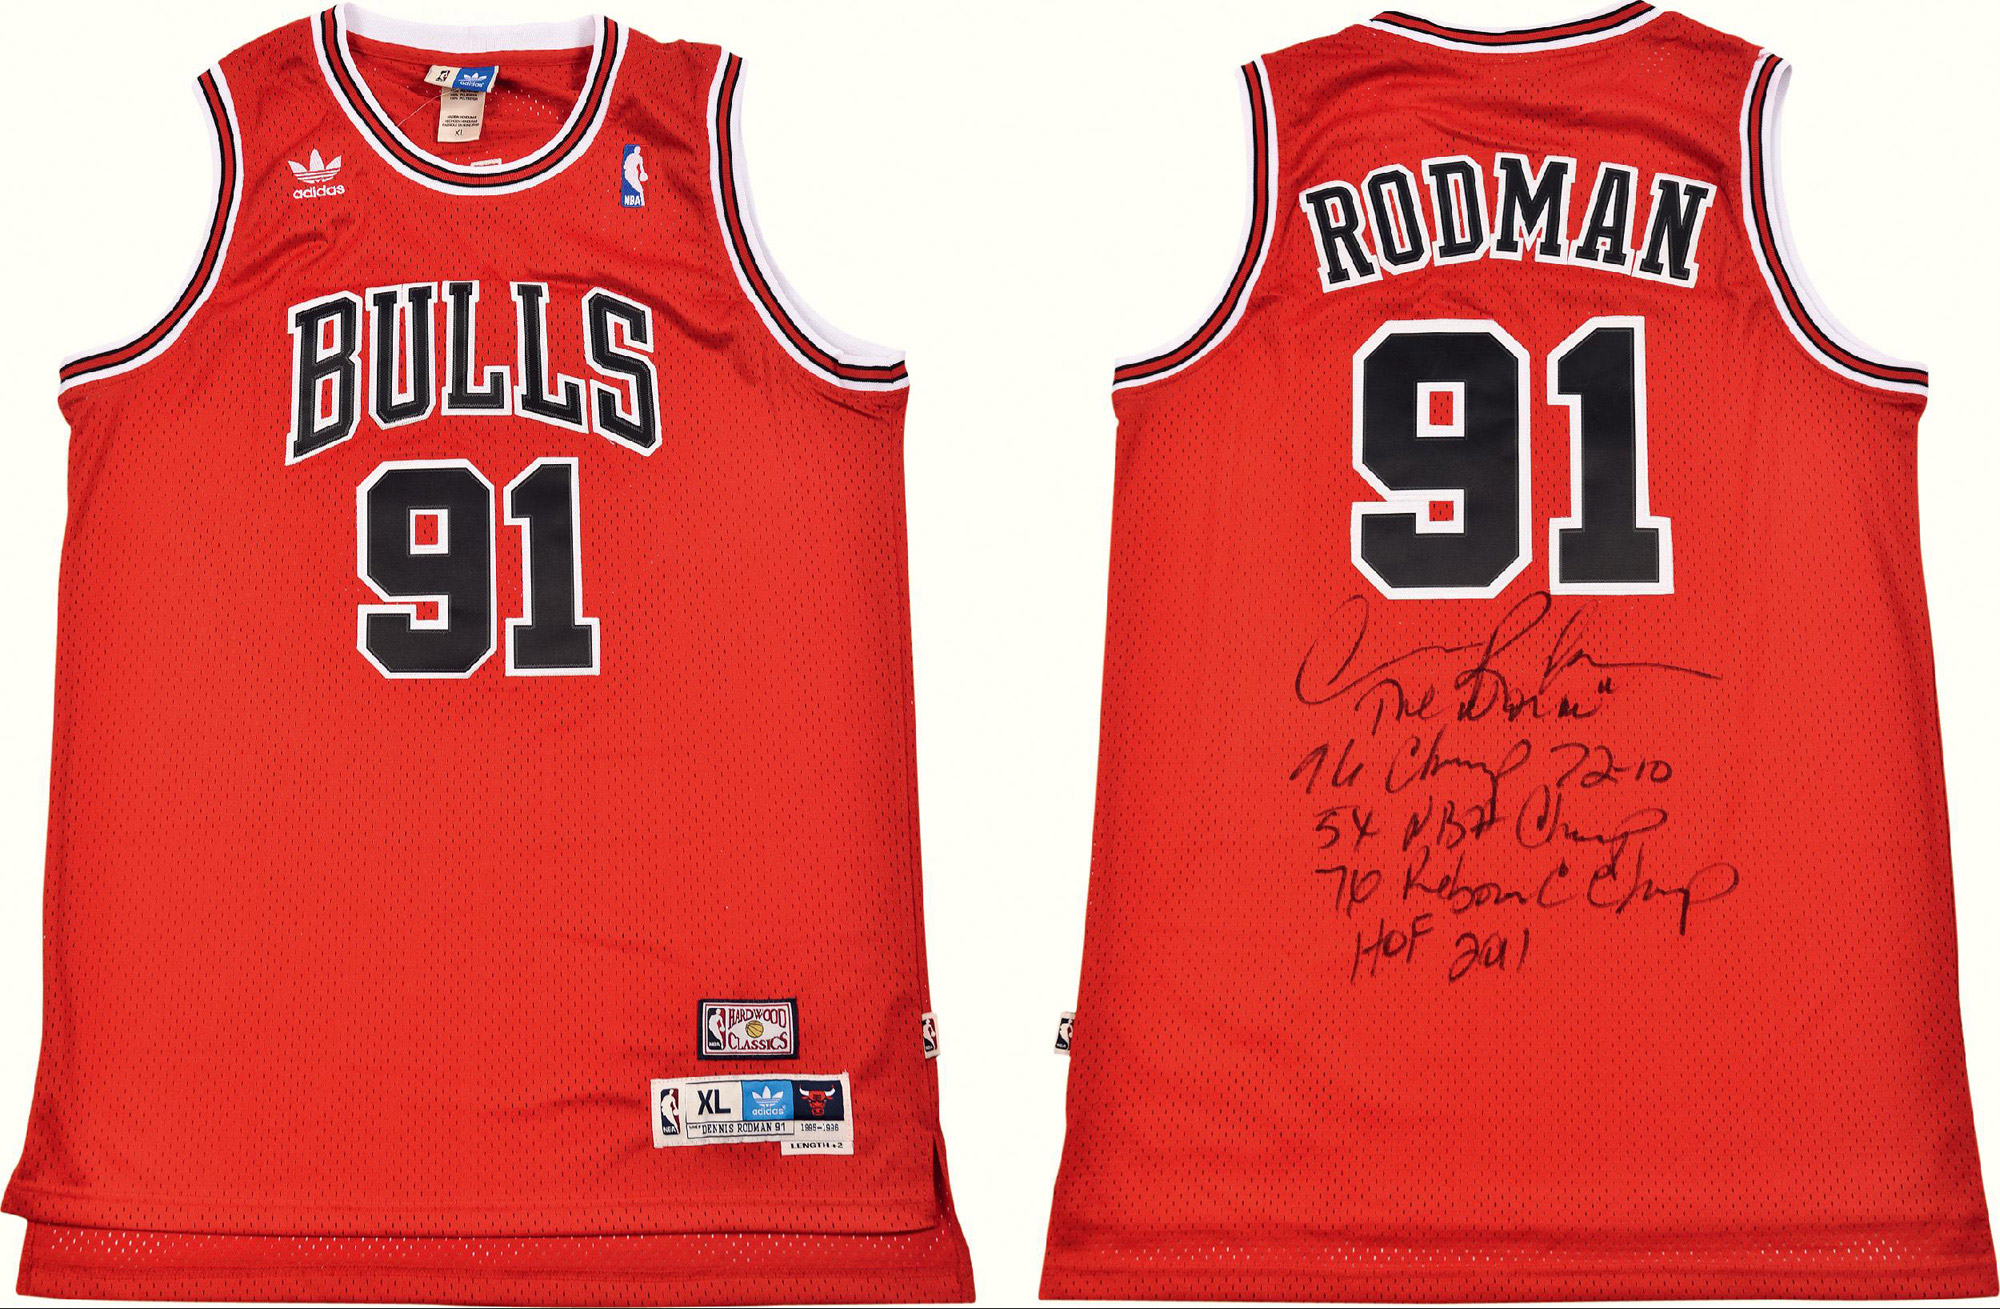 11148篮球巨星罗德曼dennisrodman亲笔签名球衣一件附证书